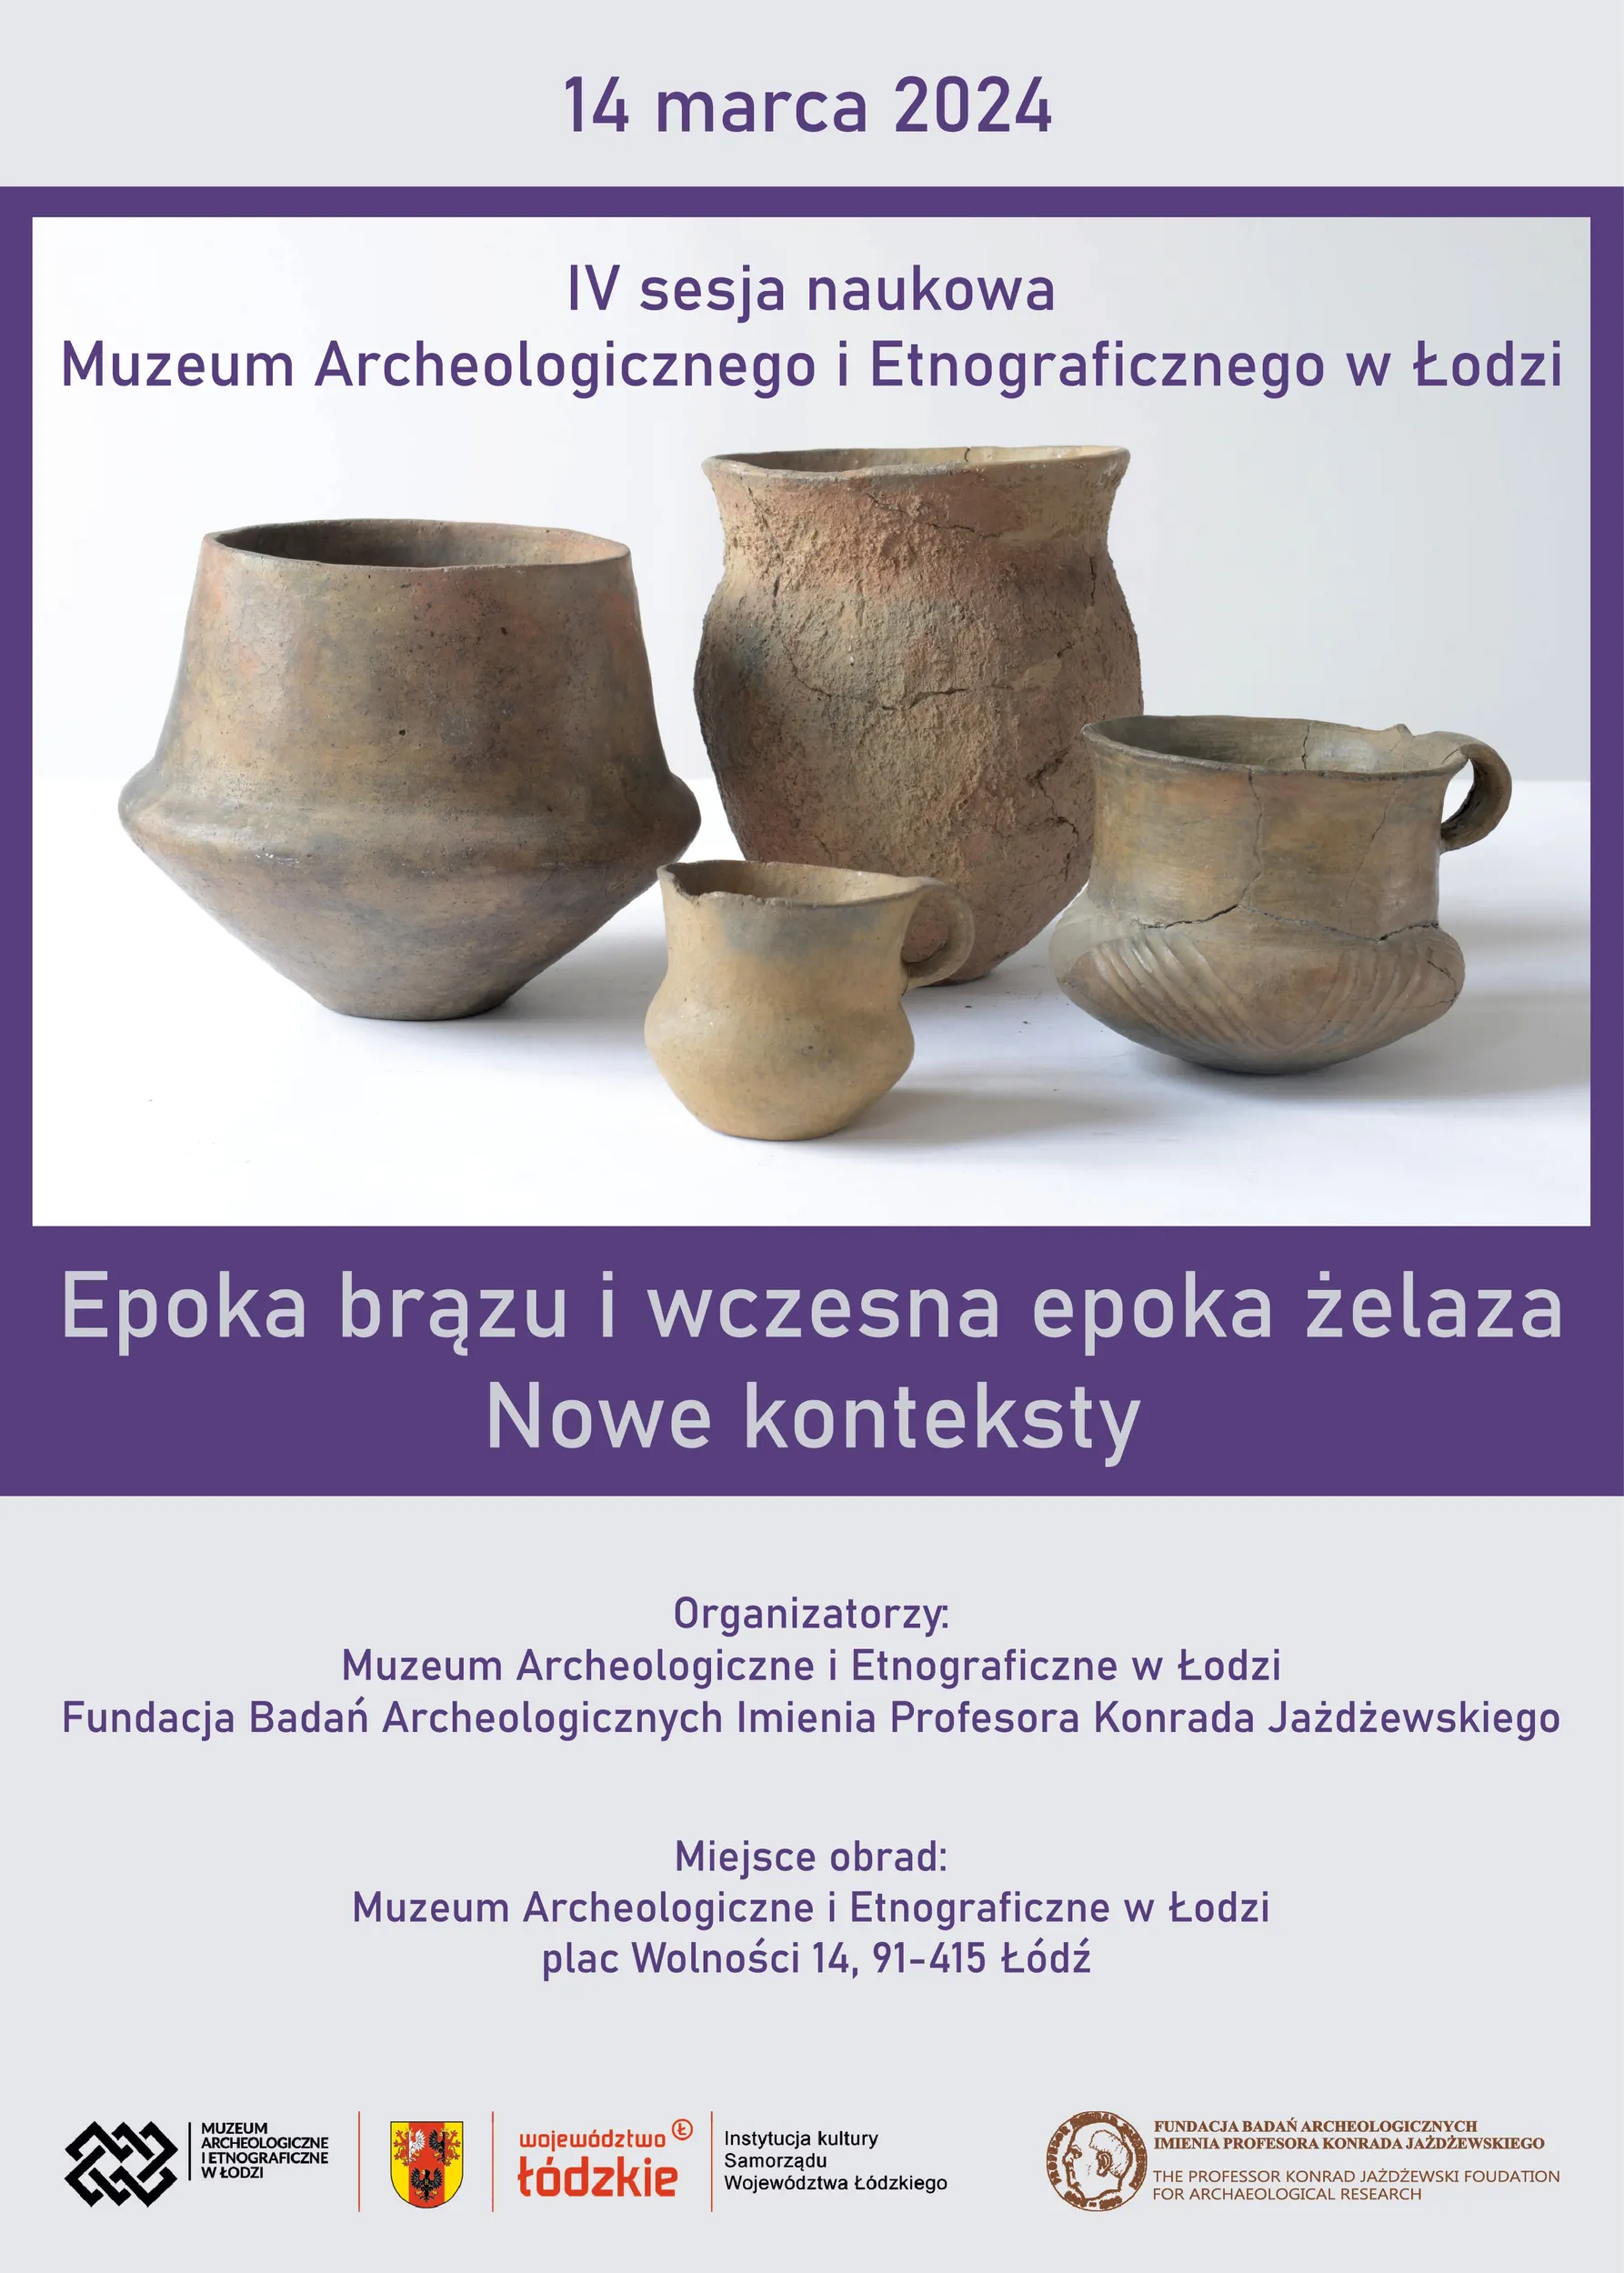 Fundacja Badań Archeologicznych Imienia Profesora Konrada Jażdżewskiego, Muzeum Archeologiczne i Etnograficzne w Łodzi